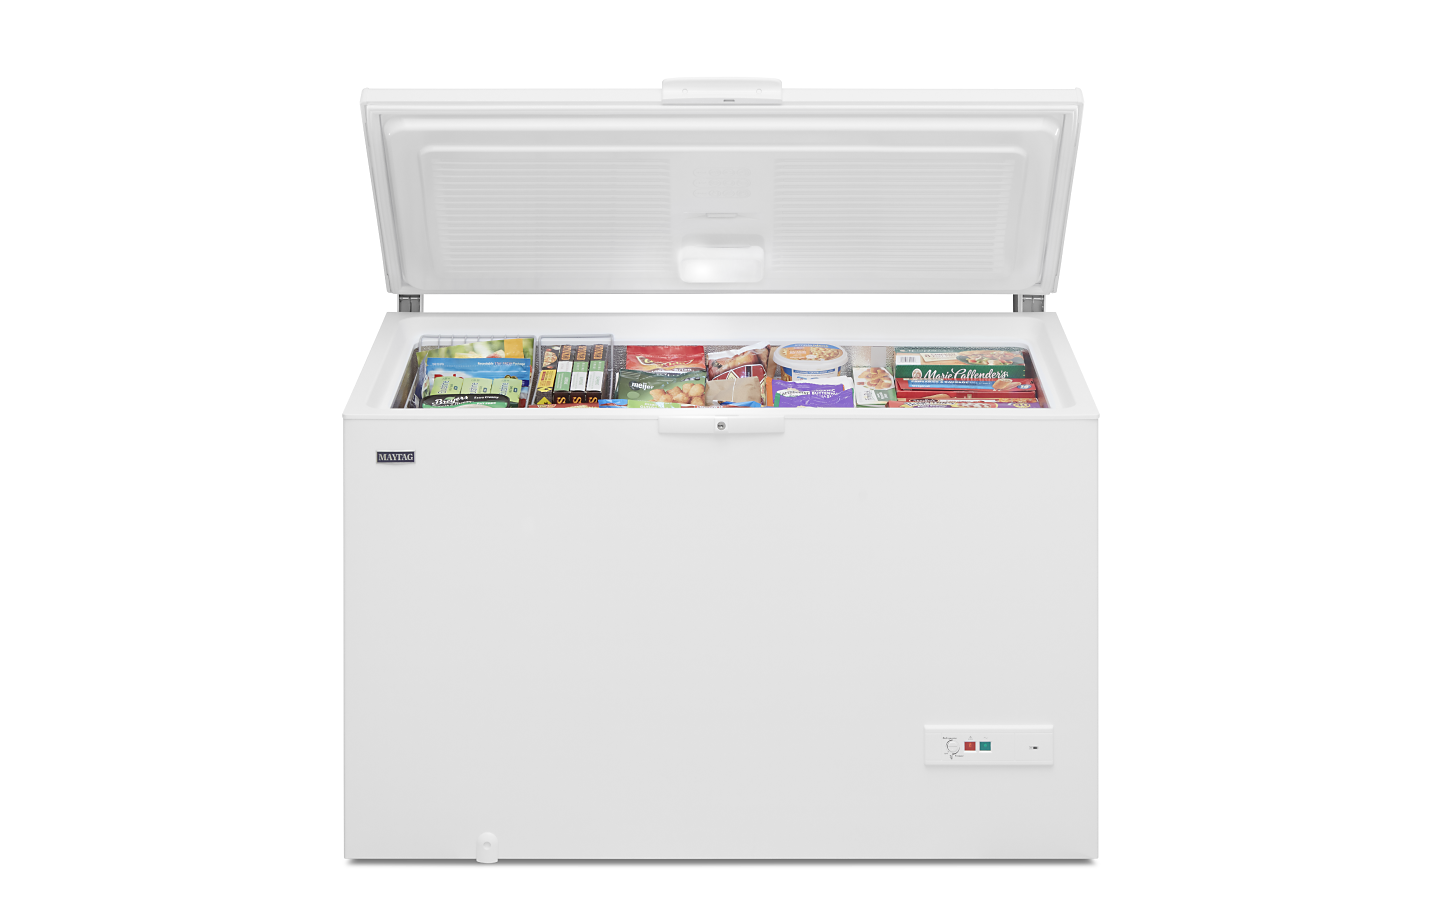 Chest Freezer 3.5 cu/ft. - appliances - by owner - sale - craigslist